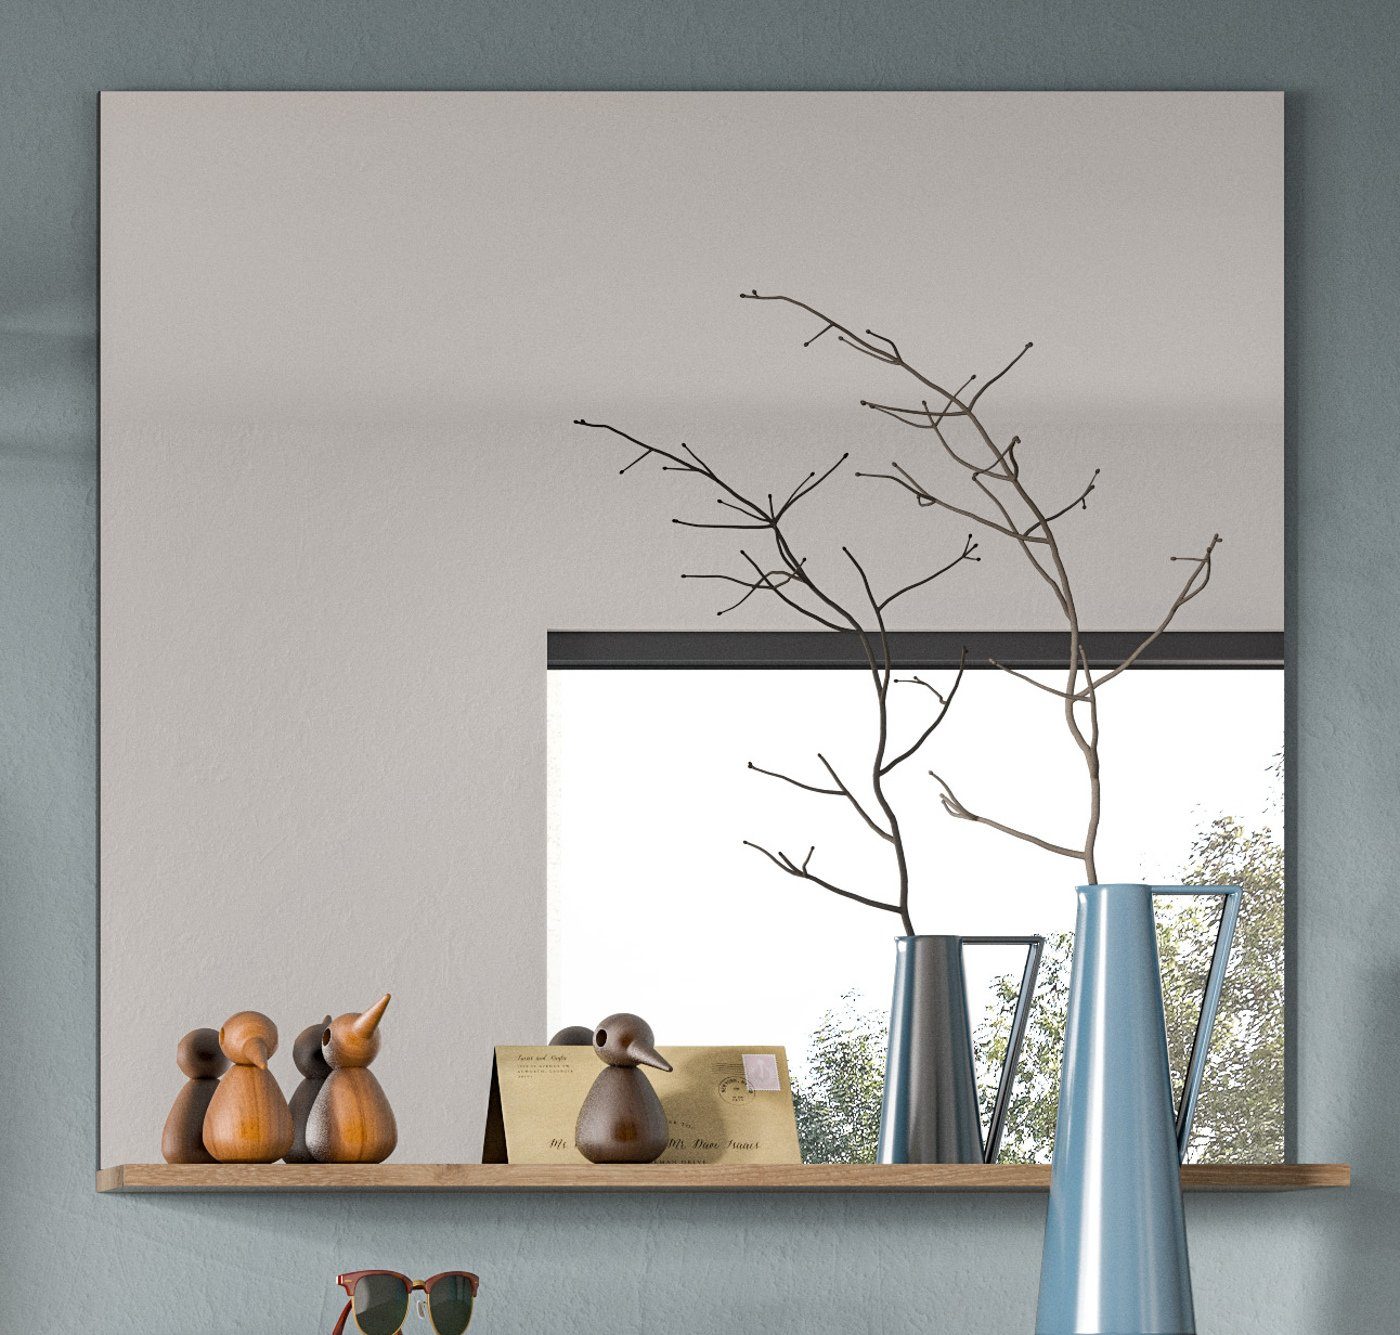 cm), Mason 84 x xonox.home Eiche und grau, (Garderobenspiegel Wandspiegel mit Basalt 90 Nox Ablage